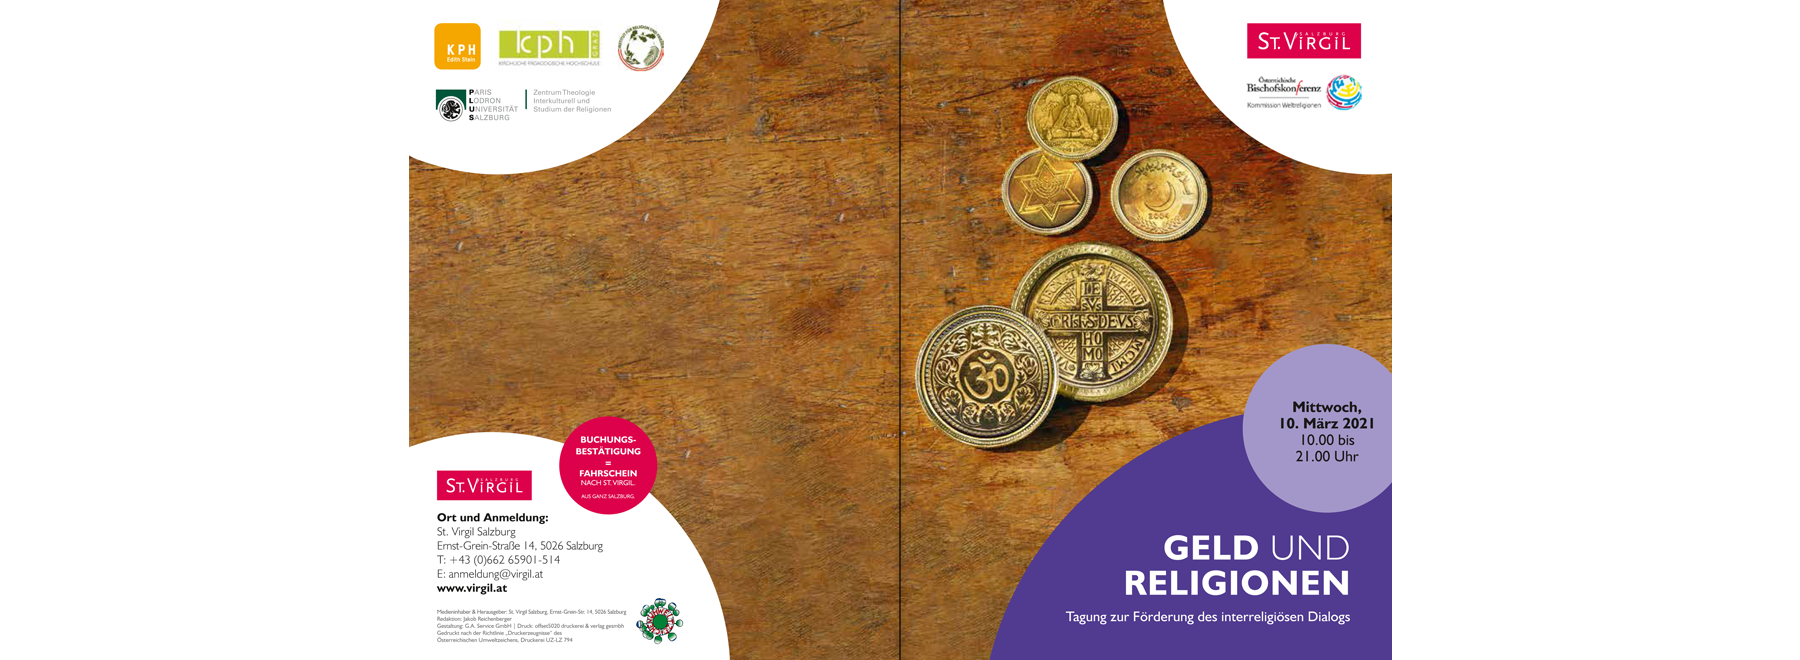 Geld und Religionen